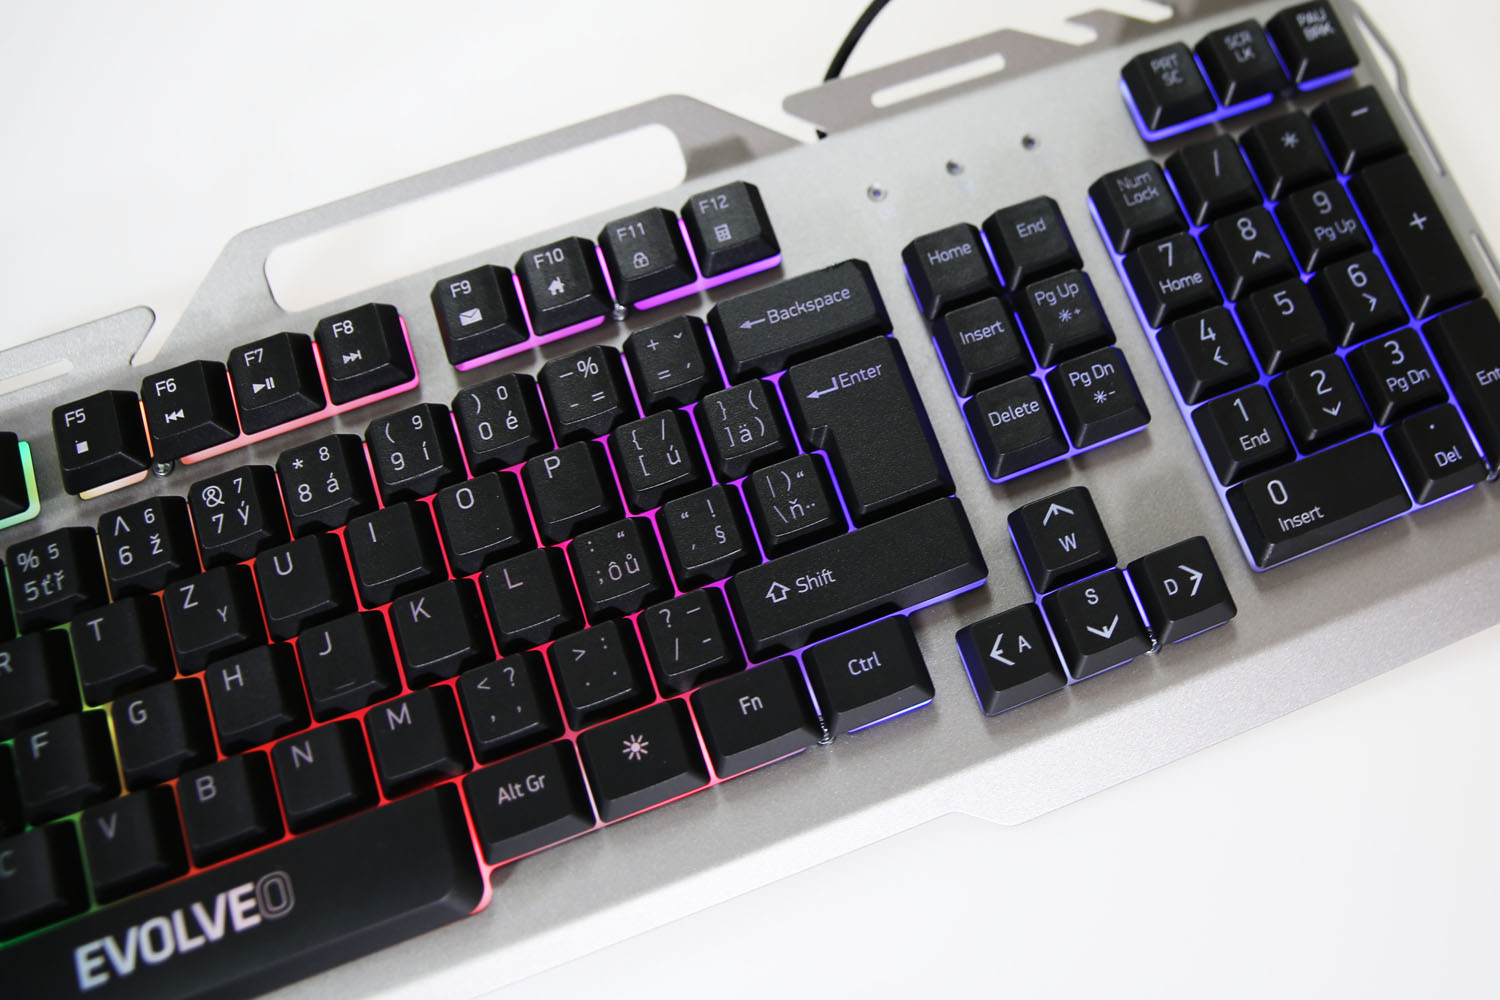 Začala se prodávat nová herní klávesnice Evolveo GK700